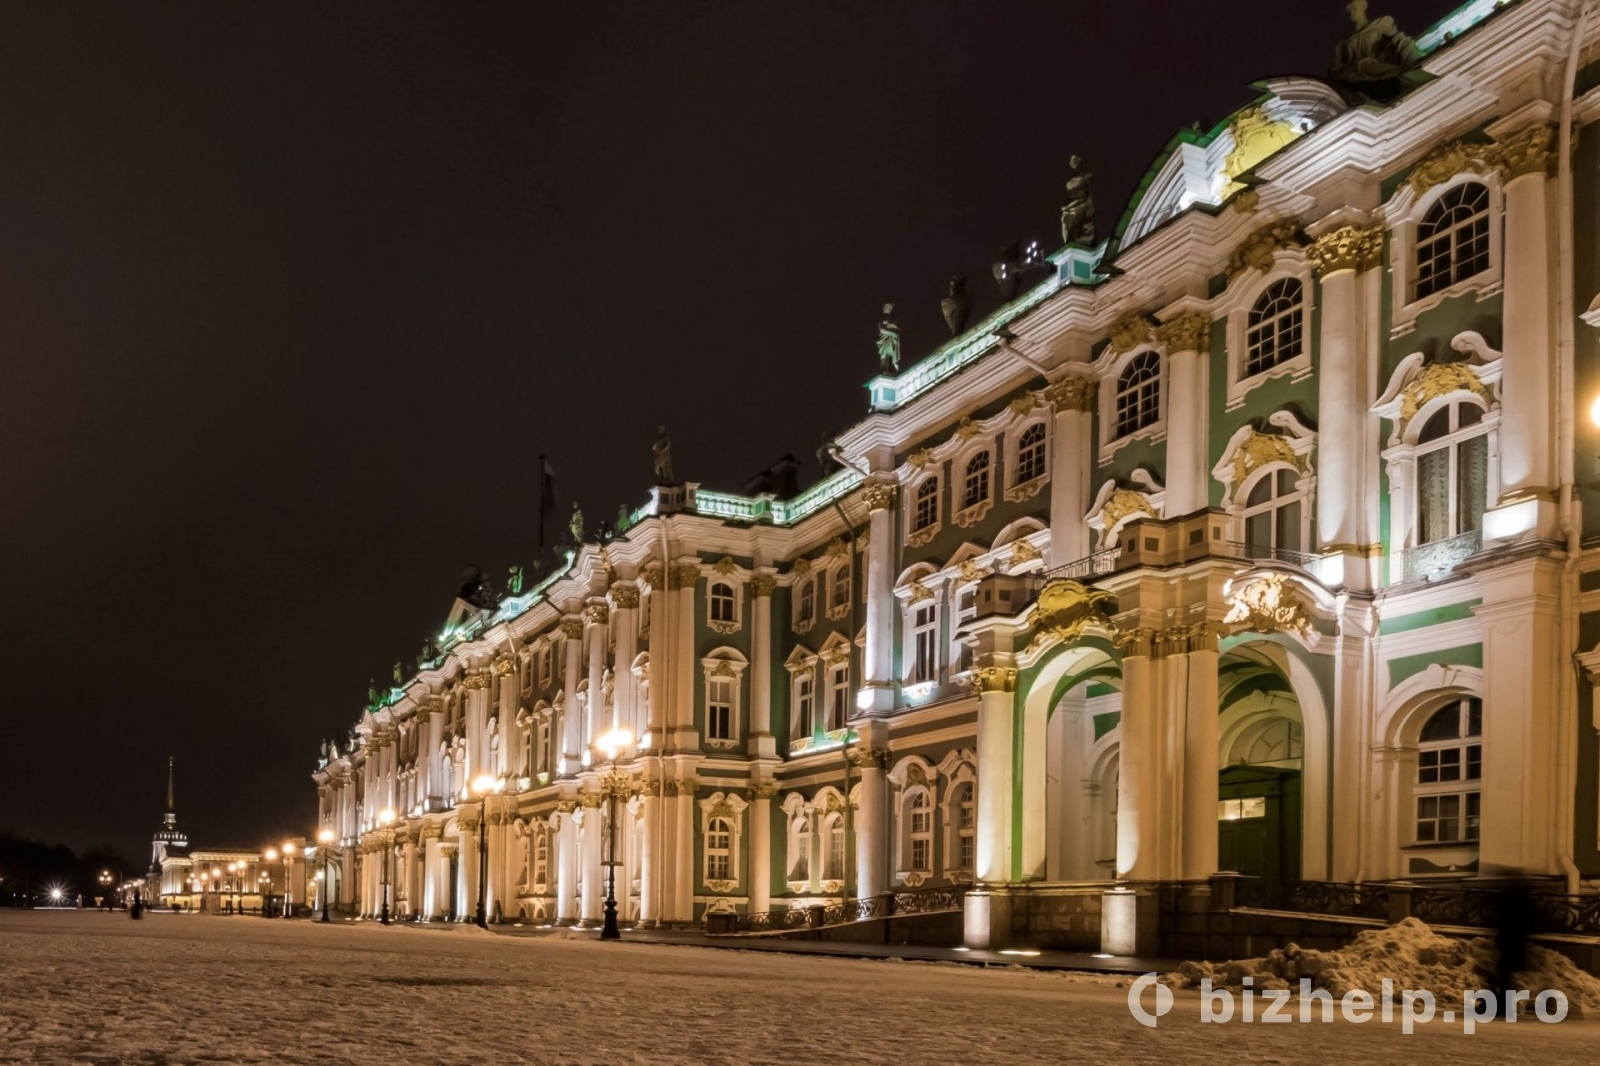 Фотография 7: На выходные в Петербург: дворцы и мосты (кэшбэк 20%)